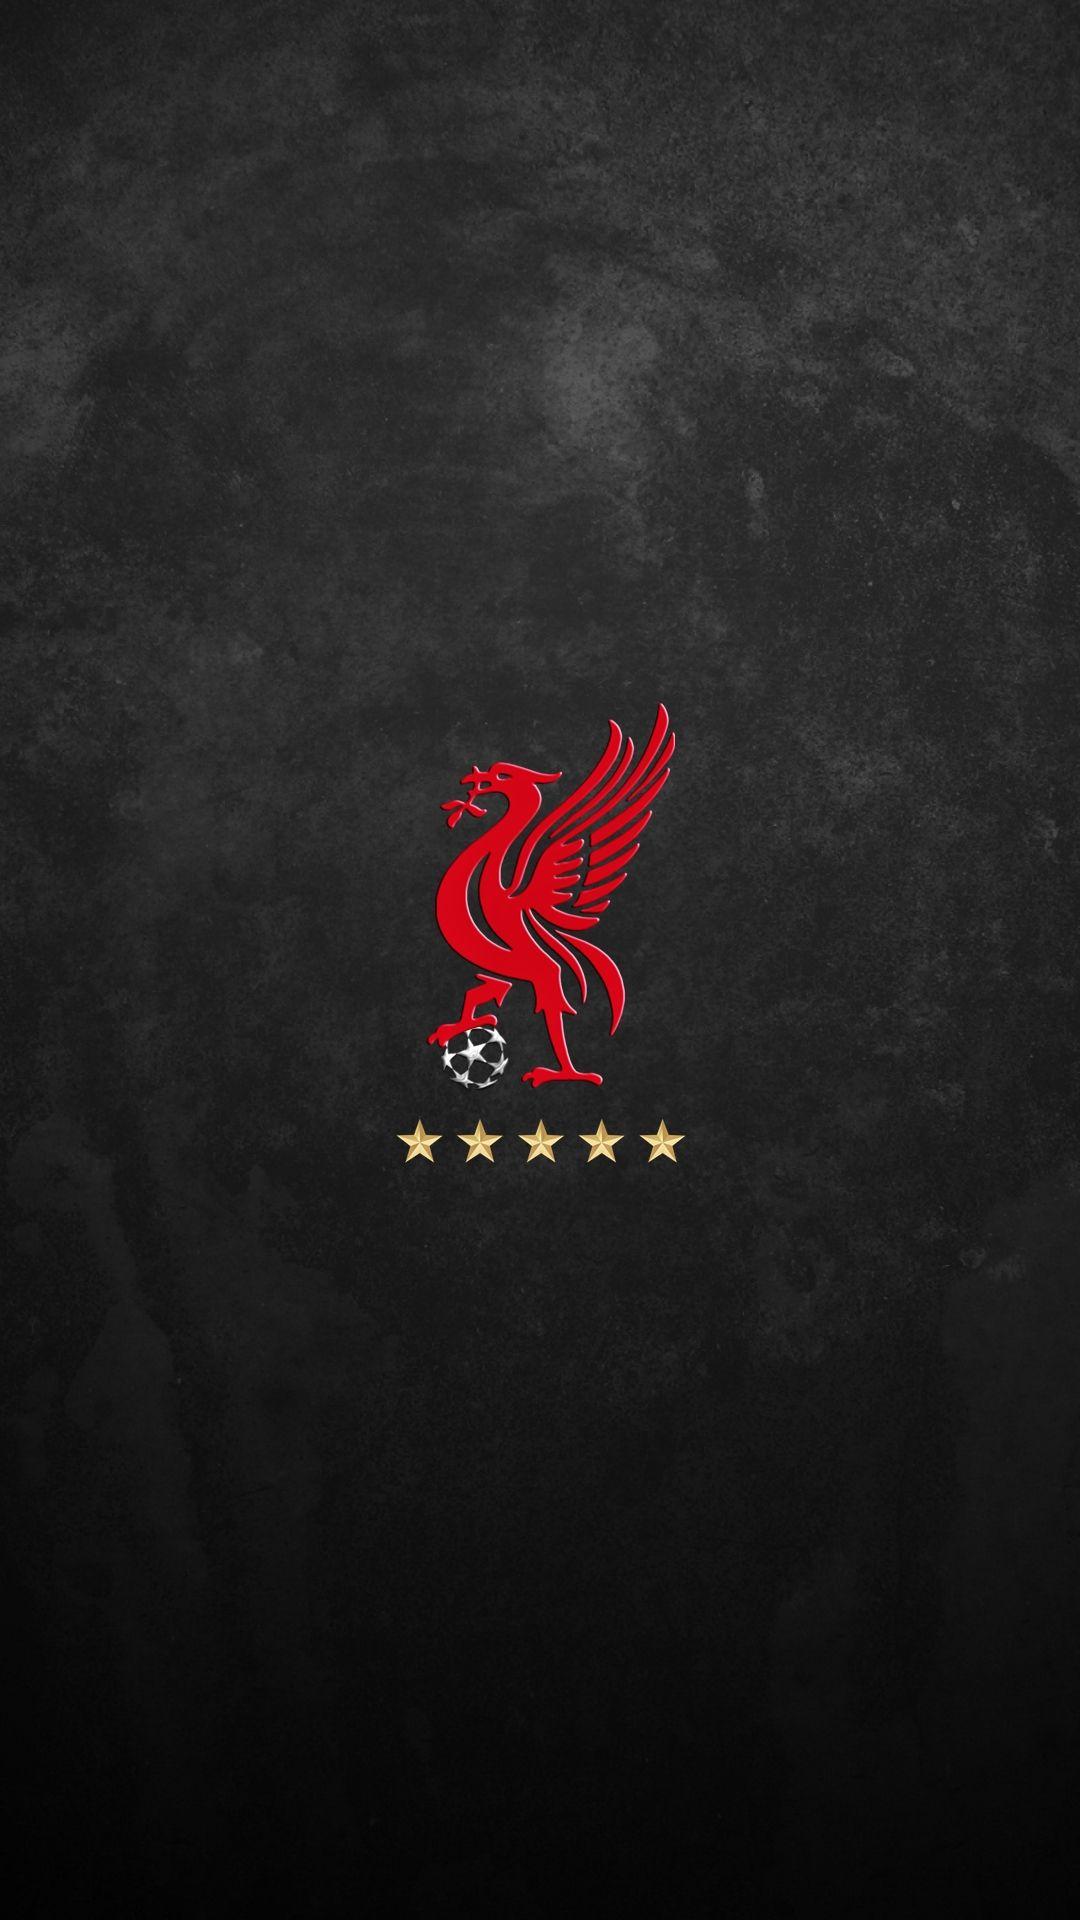 Liverpool FC. Liverpool fc wallpaper, Liverpool